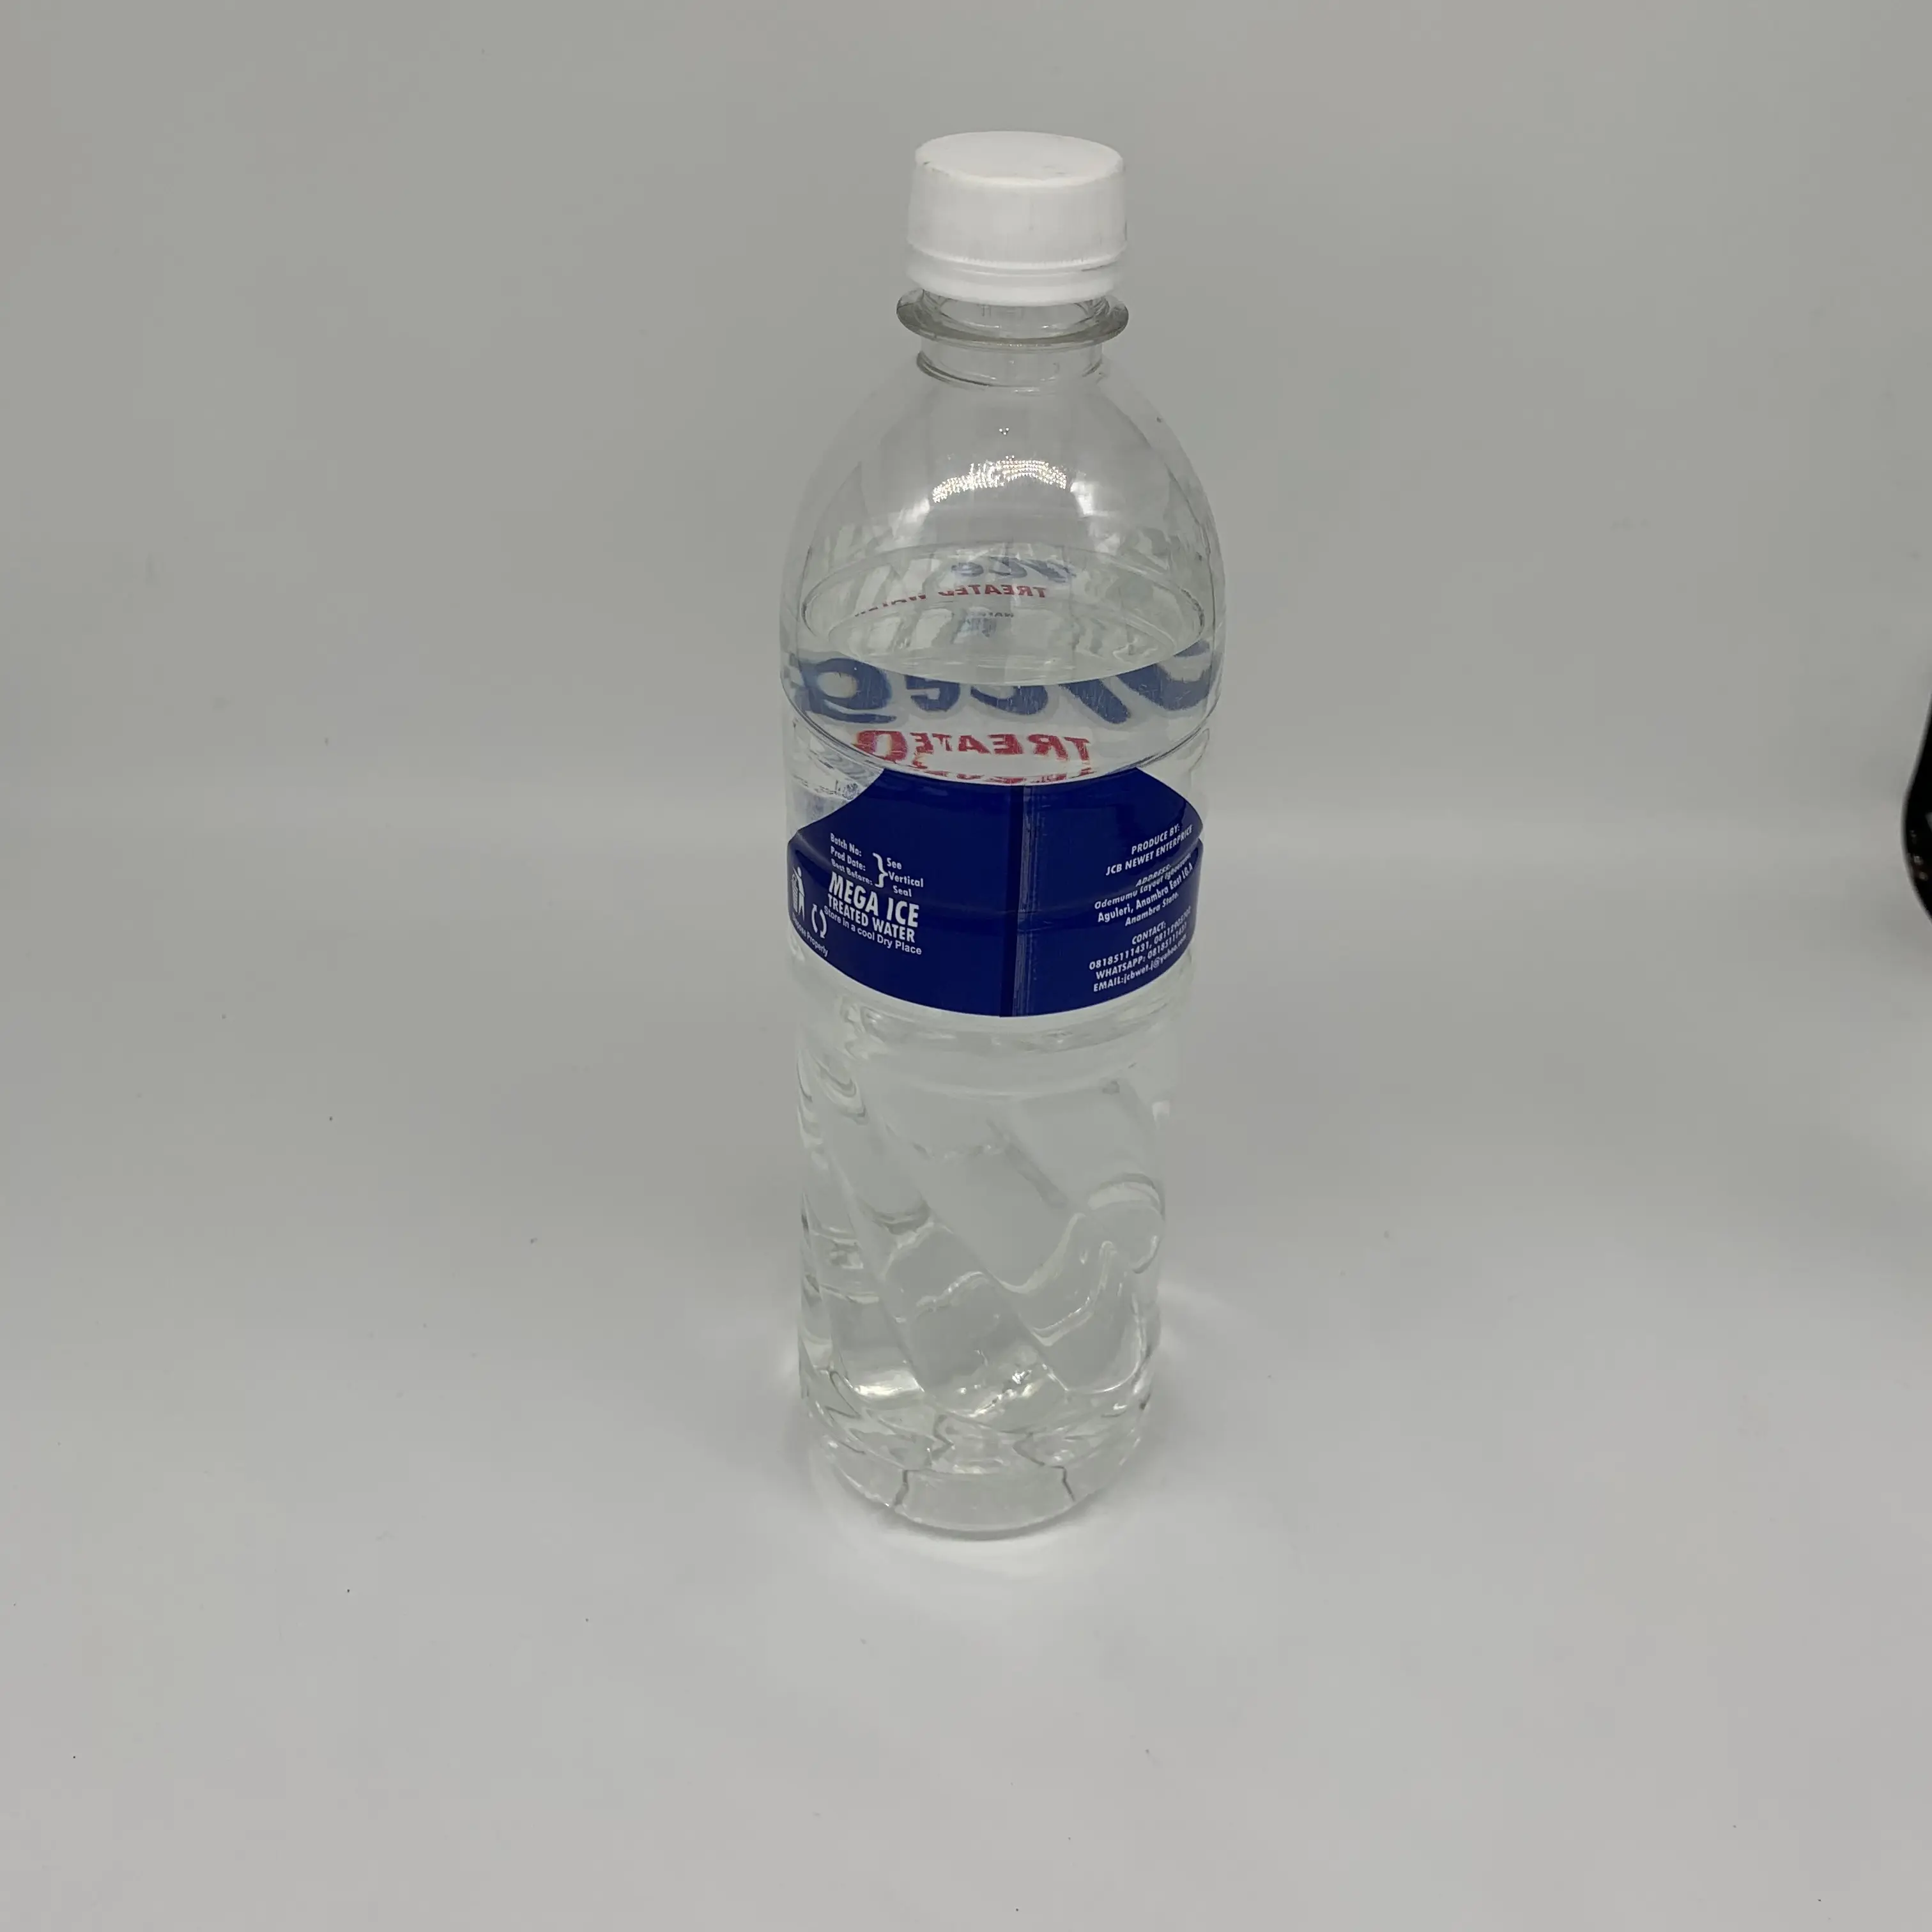 شريط تغليف قابل للانكماش من البولي فينيل كلوريد, شريط تغليف مكون من 5 جالون لختم زجاجة المياه